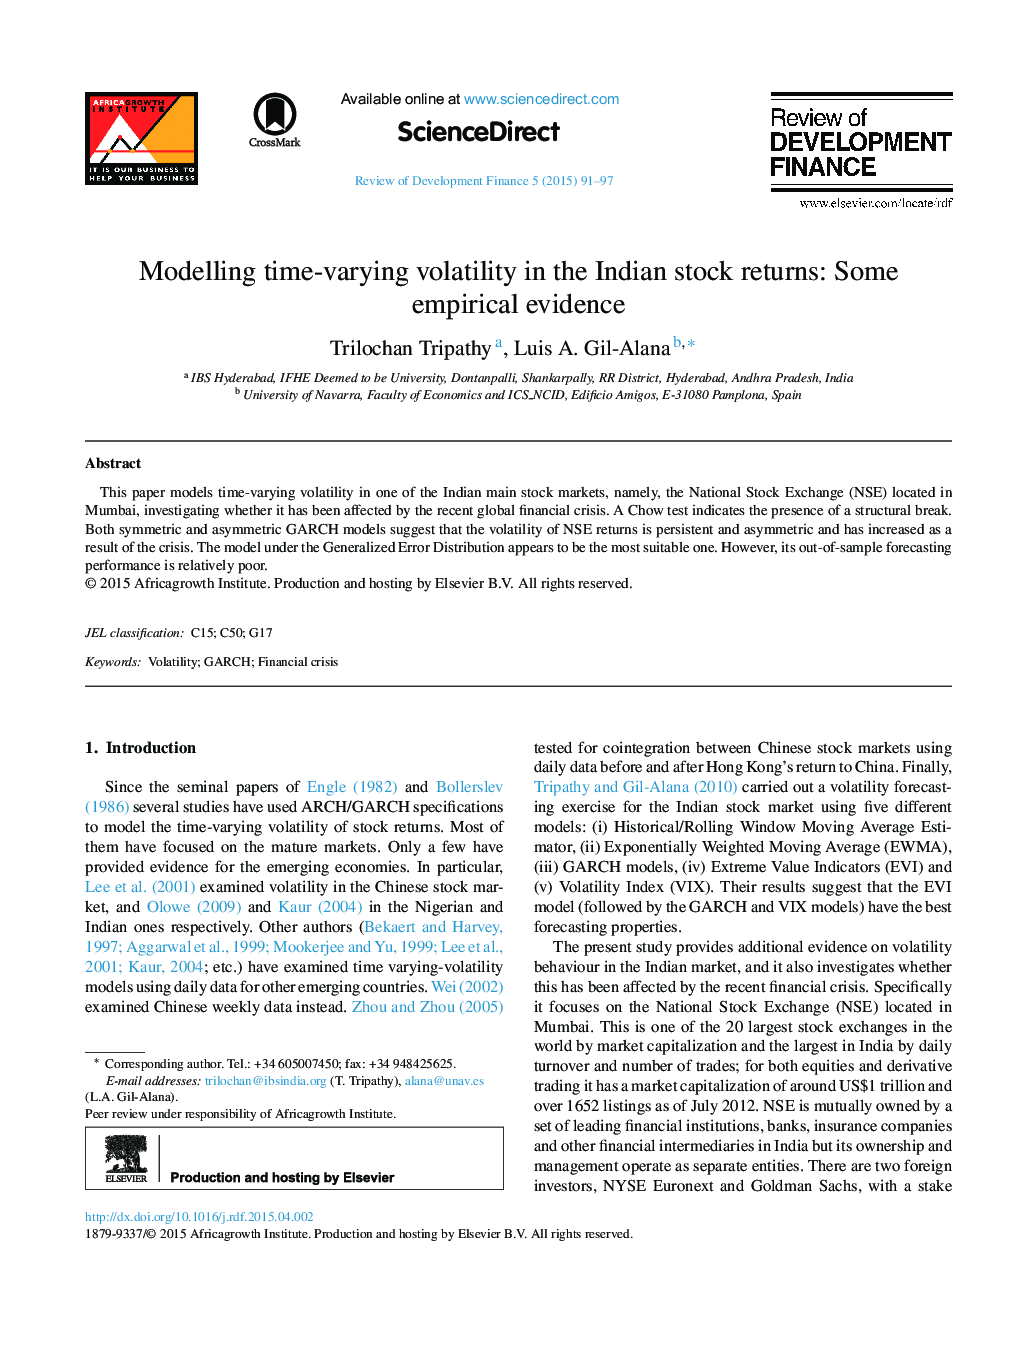 مدلسازی نوسانات متغیر با زمان در بازده سهام هند: برخی شواهد تجربی